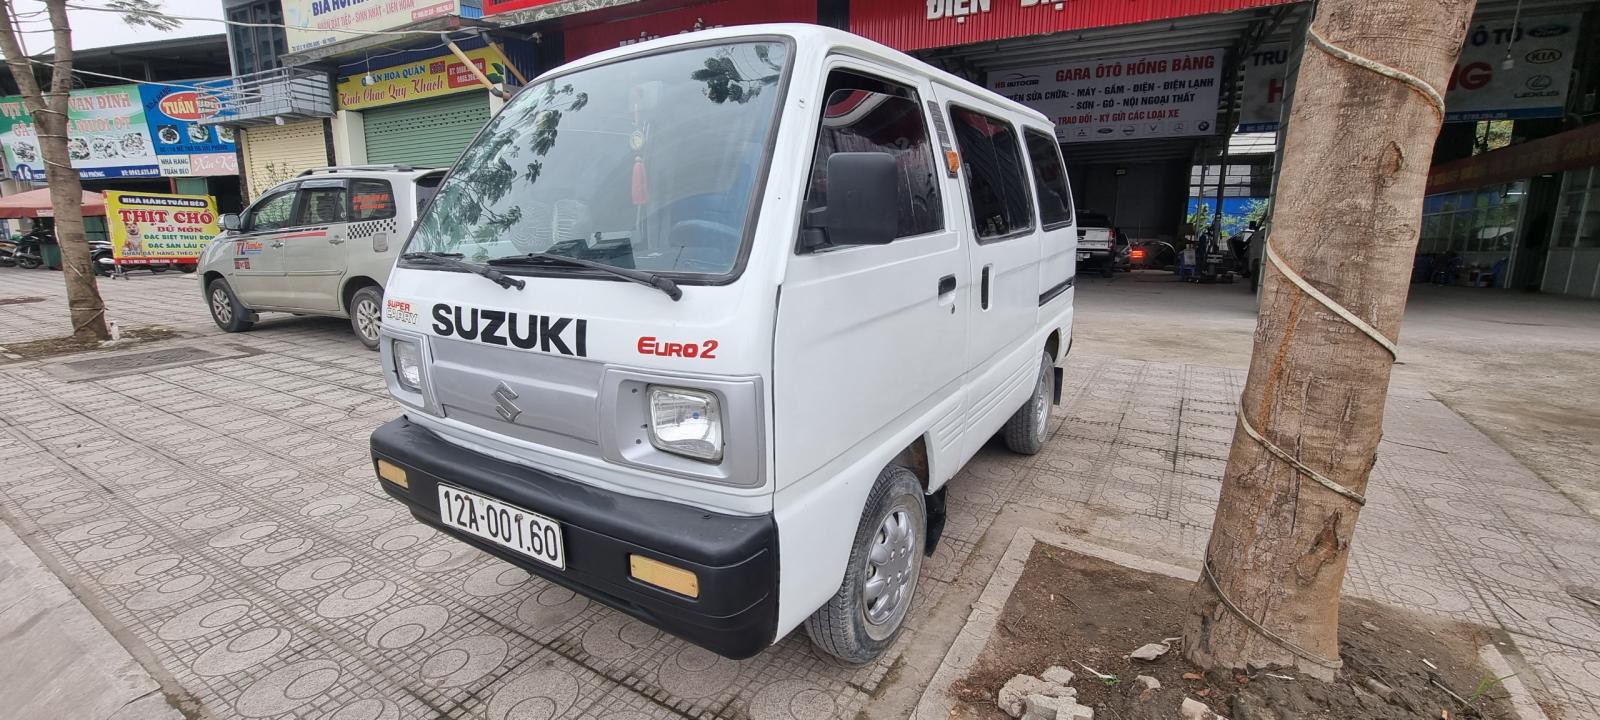 Bán xe Suzuki cóc 7 chỗ không niên hạn đời 2002 tại Hải Phòng lh 090.605.3322